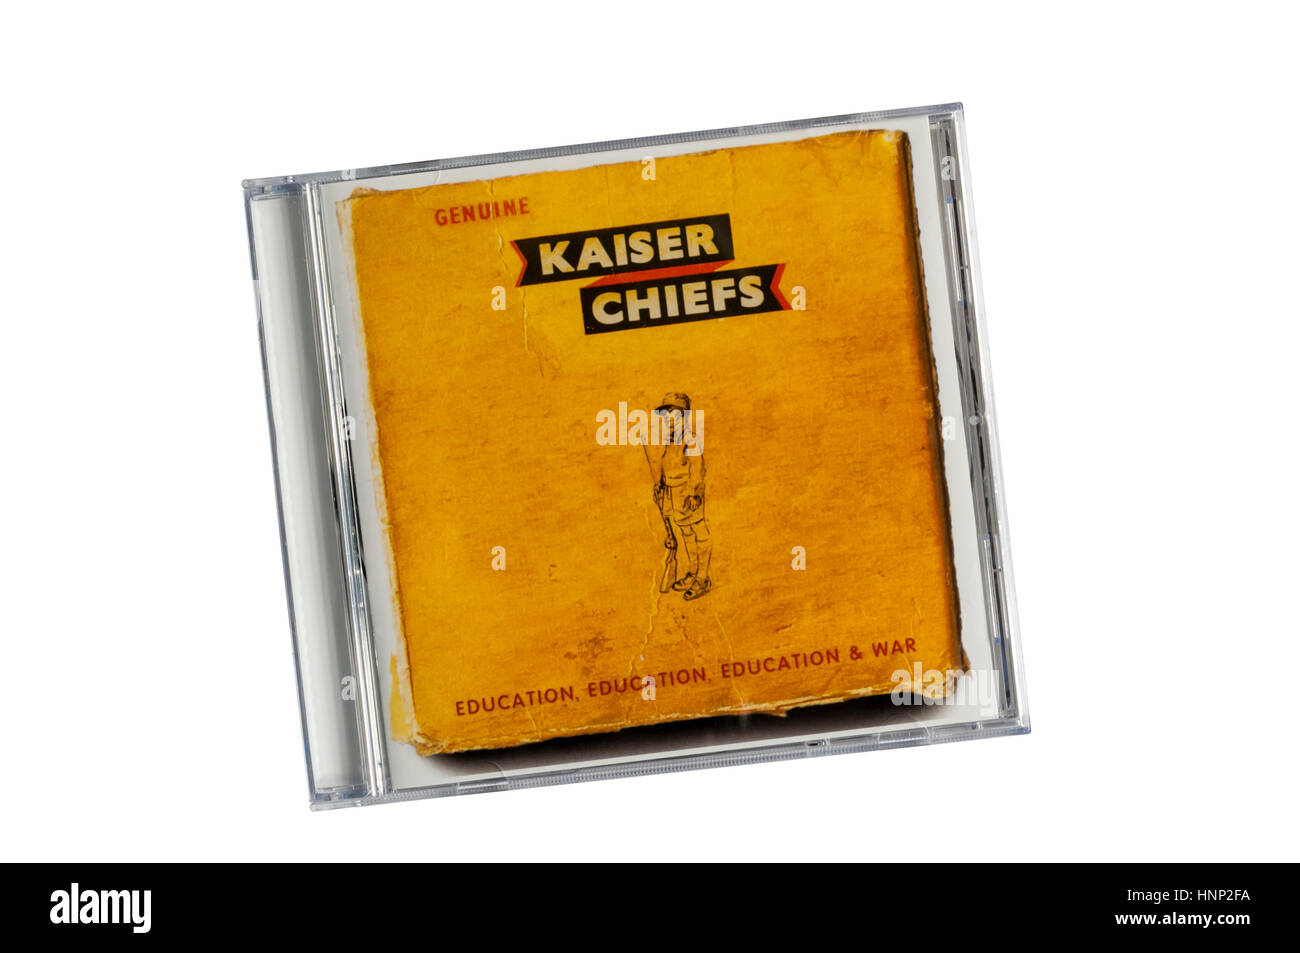 Education, Education, Education & War était le 5ème album studio du groupe anglais Kaiser Chiefs. Publié en mars 2014. Banque D'Images